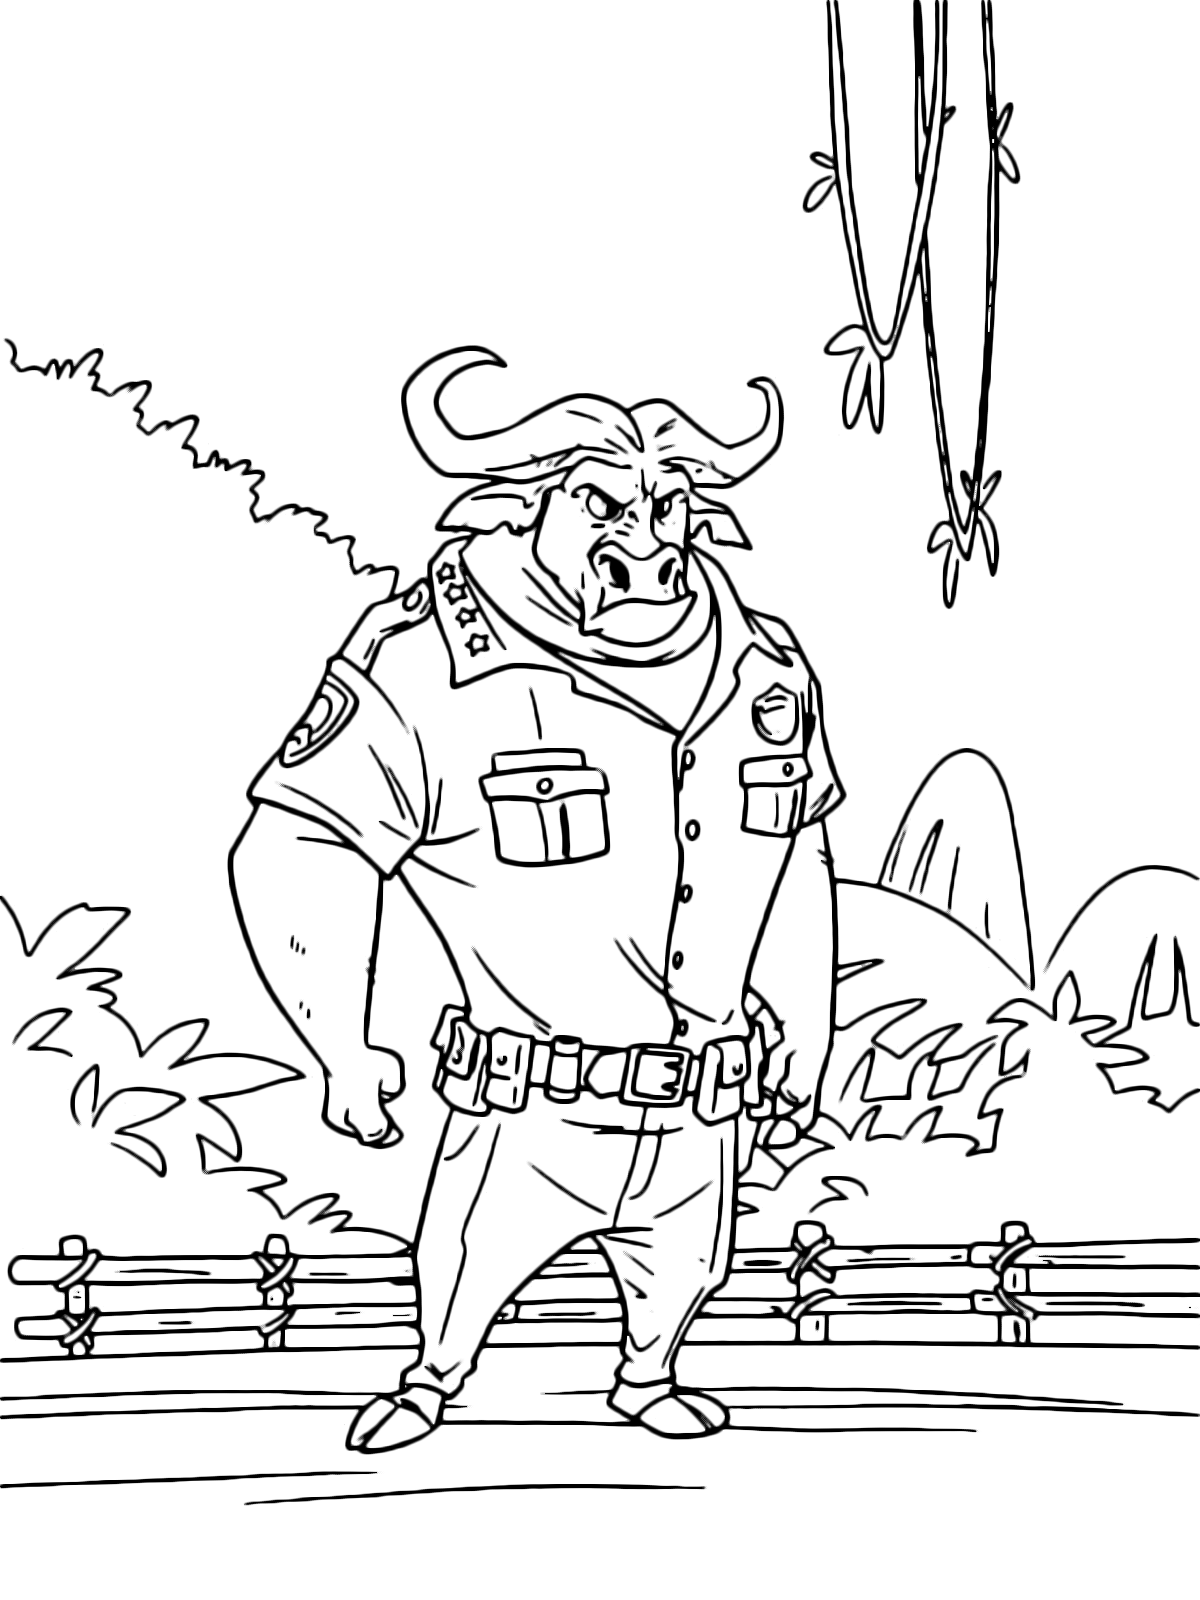 Zootropolis - Il capitano Bogo capo del dipartimento di polizia di Zootropolis